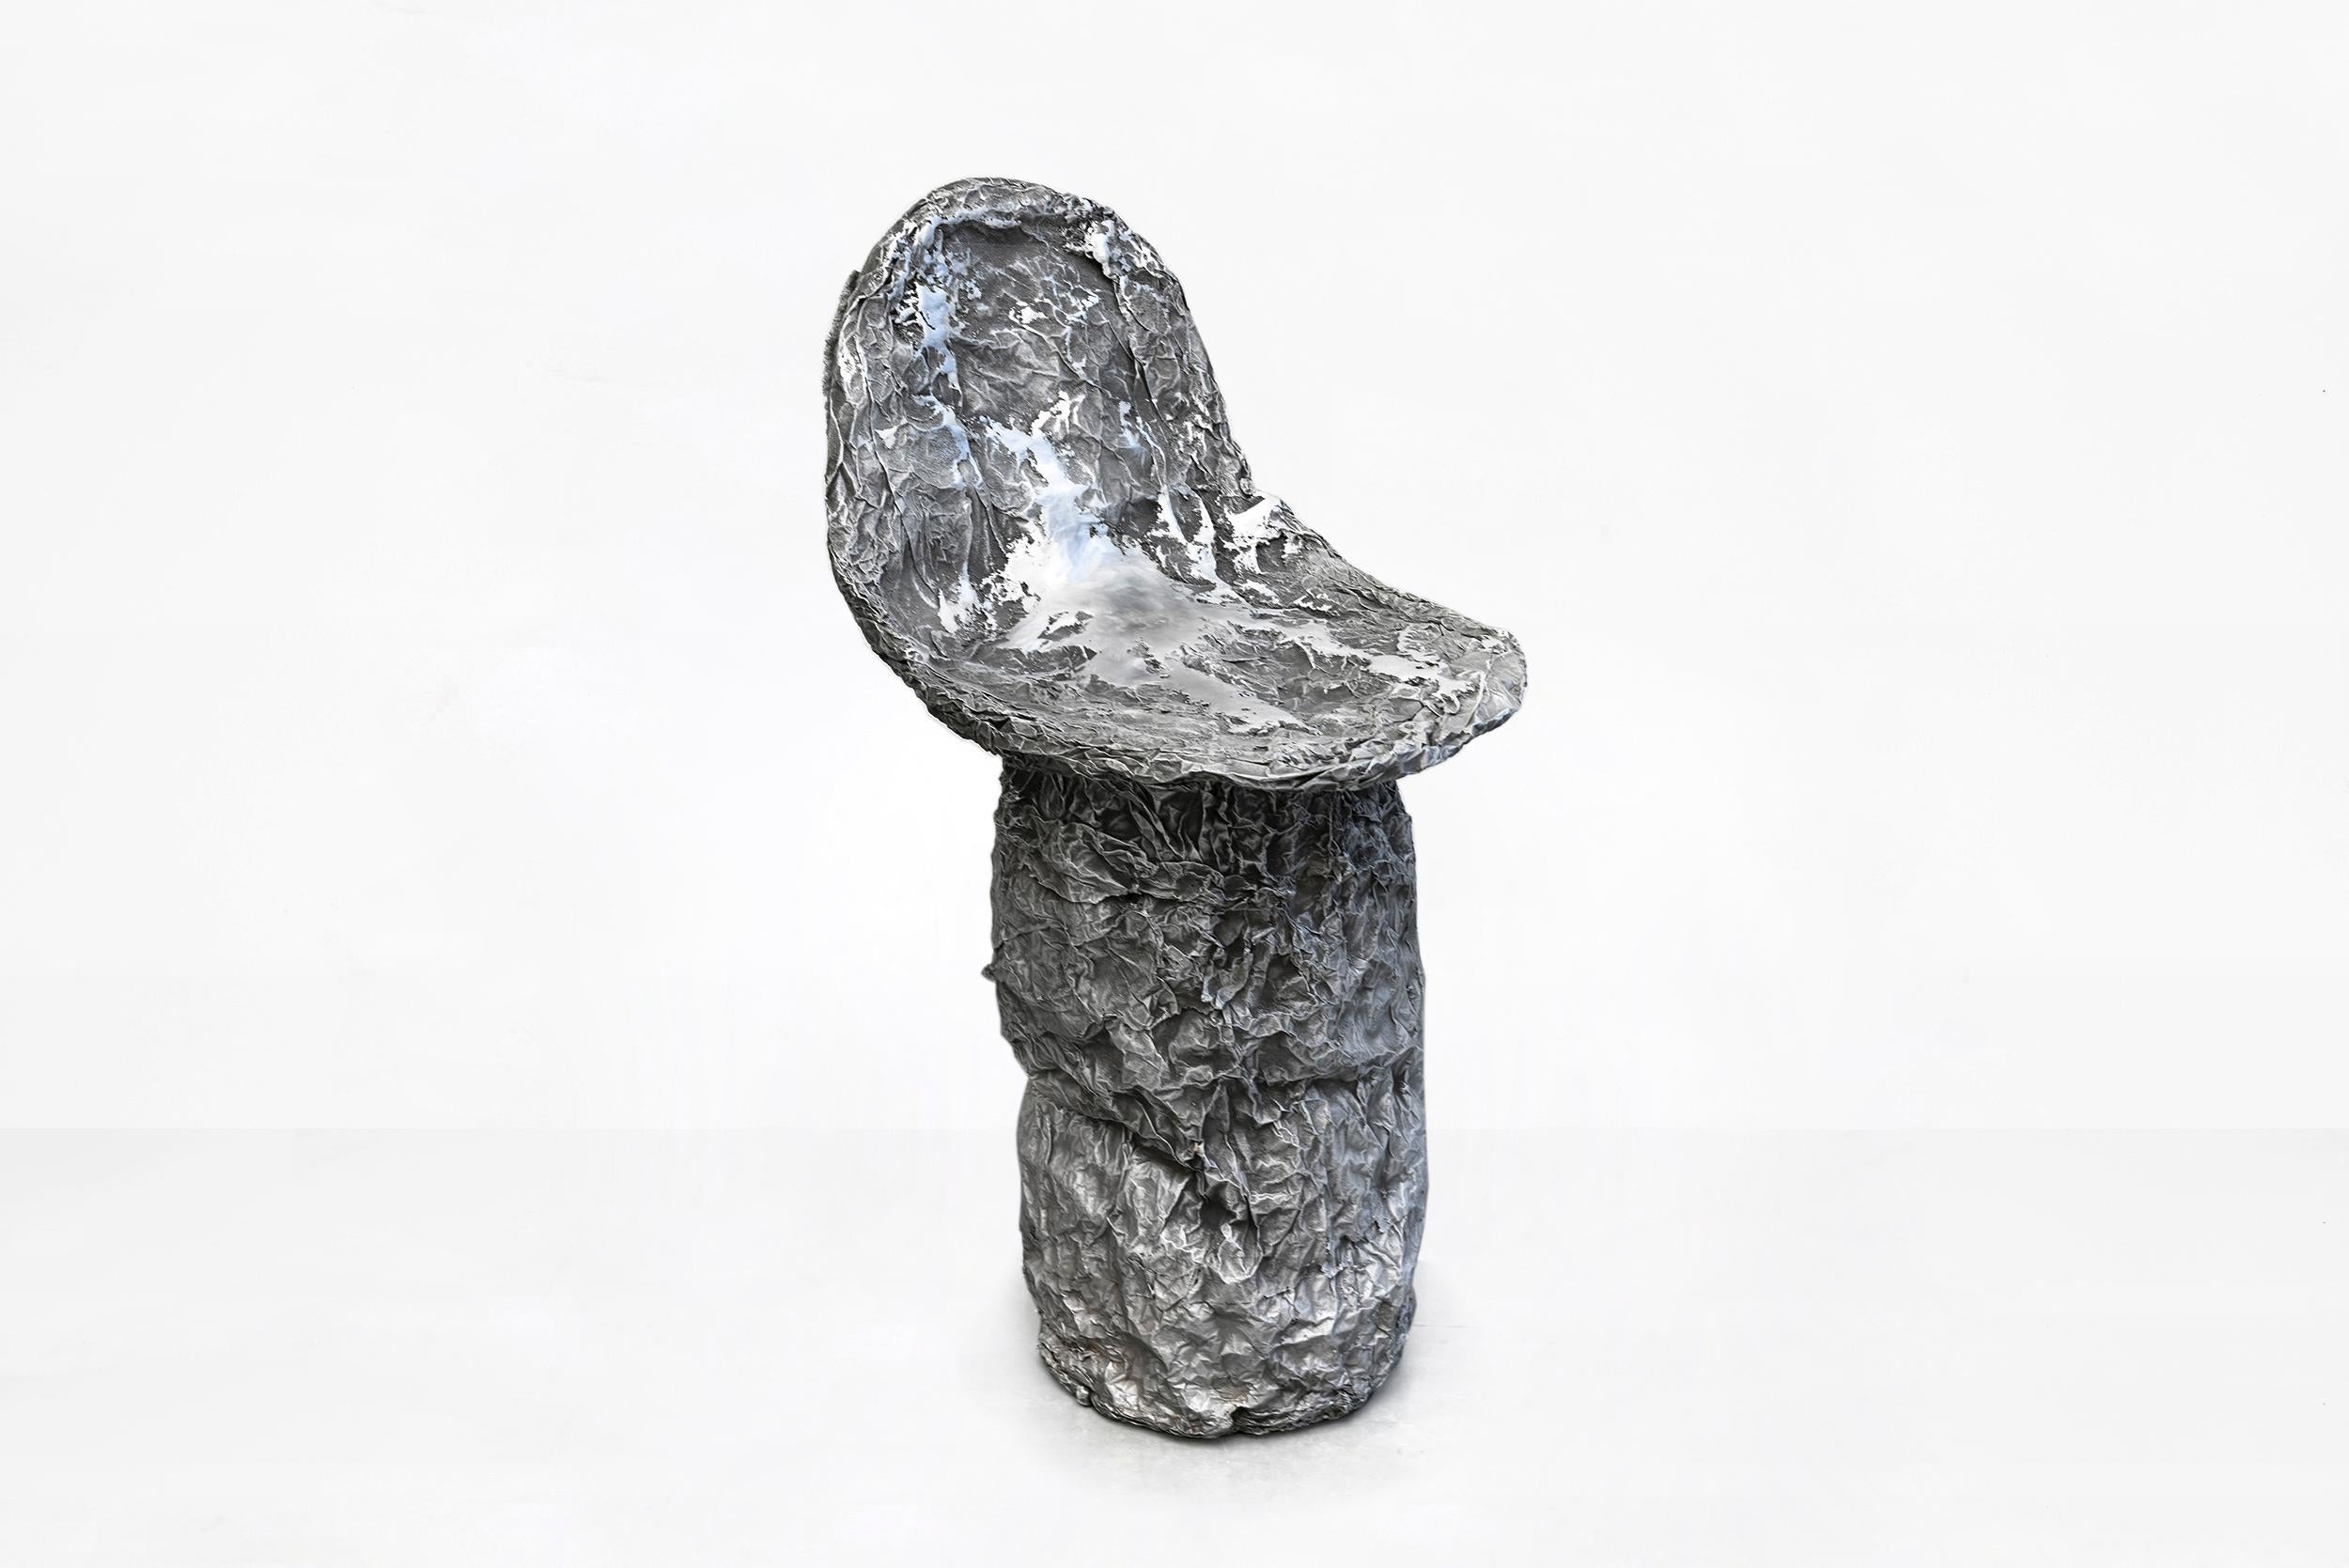 Sigve Knutson, silla de papel de aluminio perdida
Fabricado por Sigve Knutson
Oslo, Noruega, 2019
Aluminio
Producido para Side Gallery, Barcelona

Medidas:
34 cm x 35 cm x 68 H cm
13,38 pulg. x 13,77 pulg. x 26,77 H pulg.

Edición
Pieza